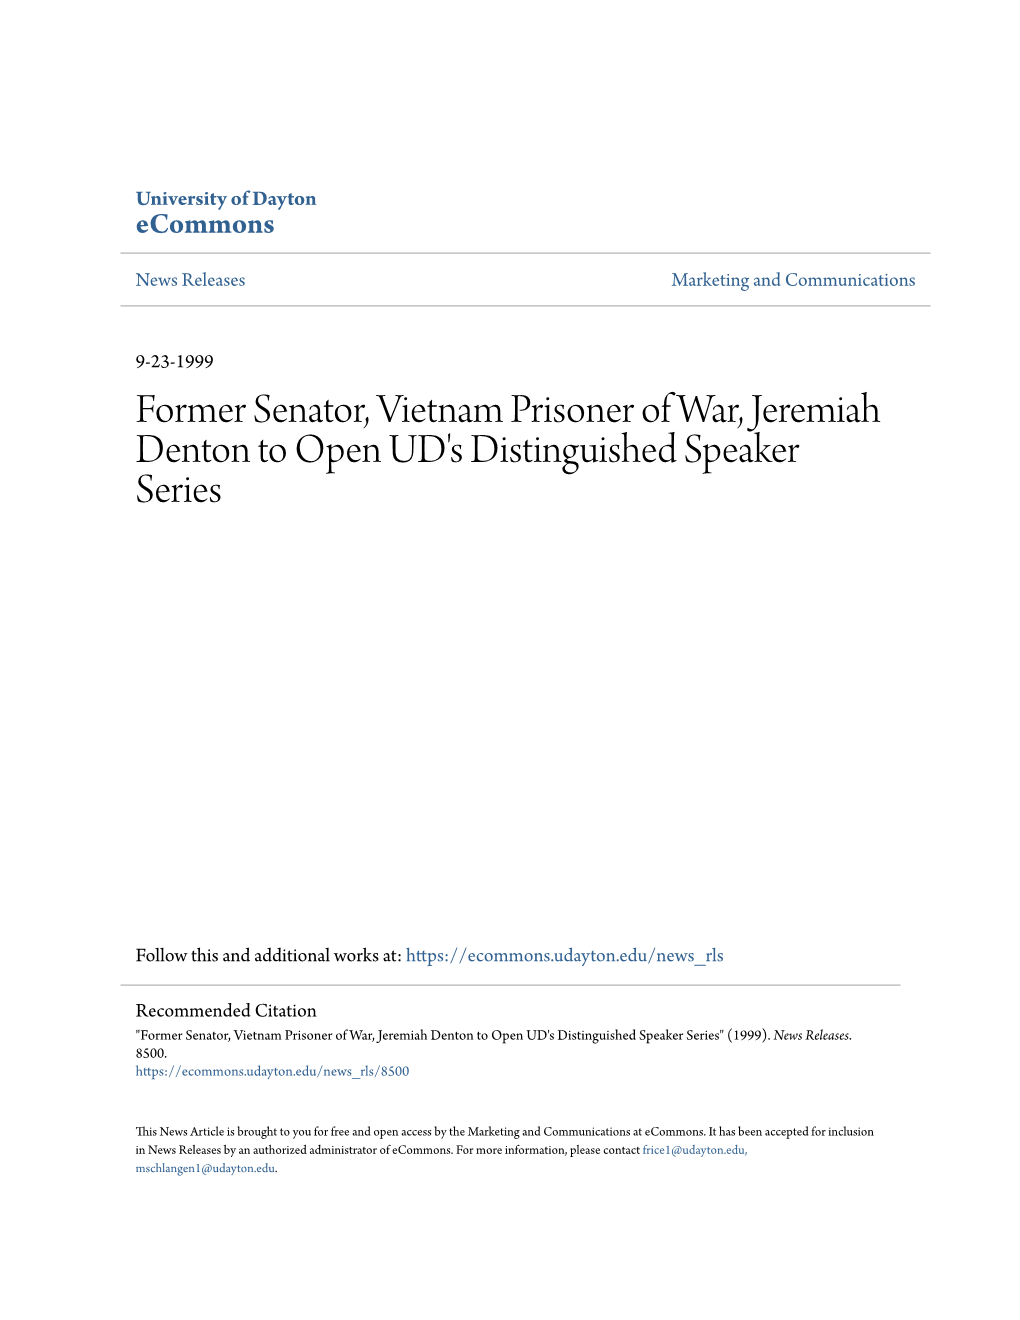 Former Senator, Vietnam Prisoner of War, Jeremiah Denton to Open UD's Distinguished Speaker Series